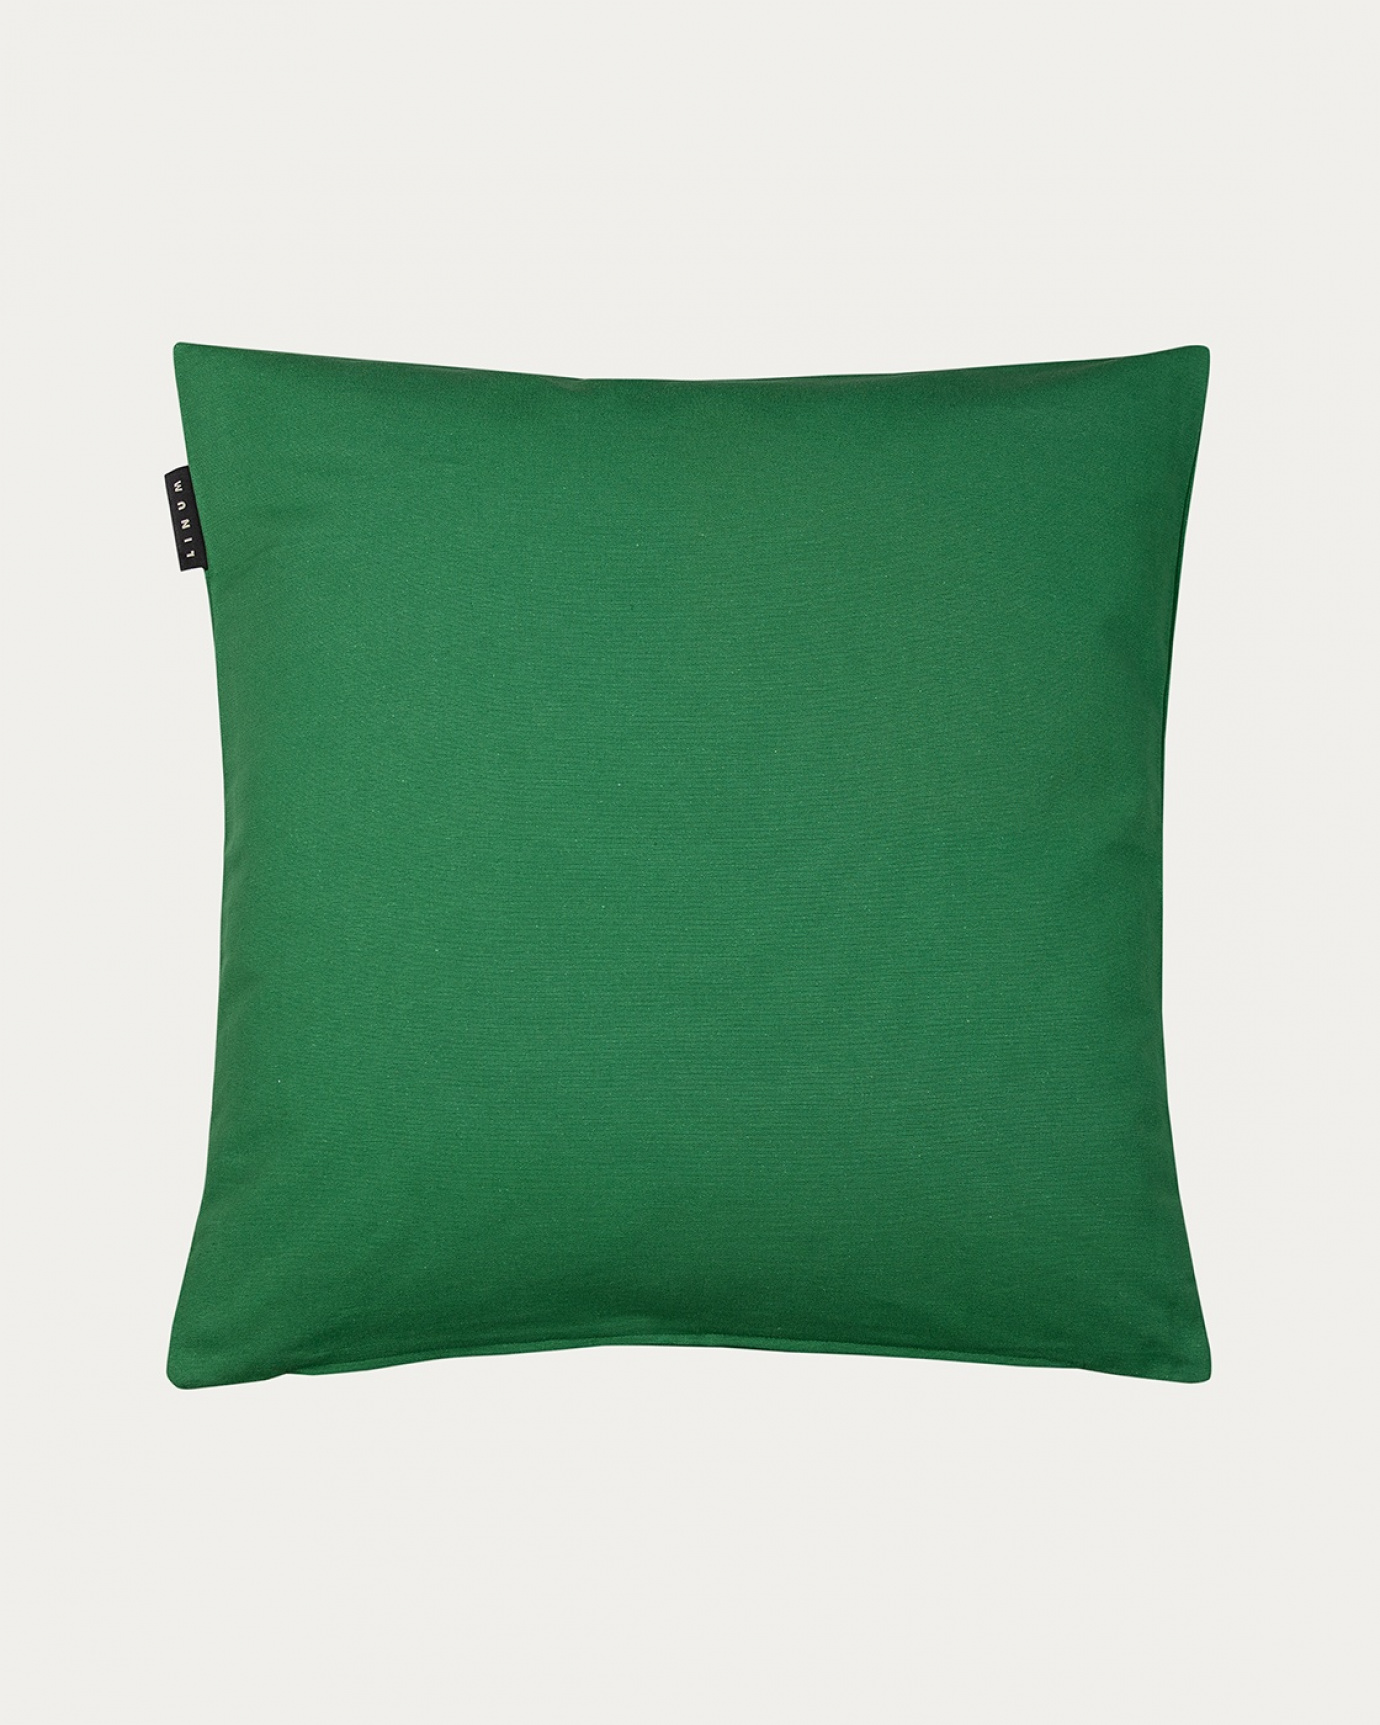 Immagine prodotto verde prato ANNABELL copricuscini in morbido cotone di LINUM DESIGN. Dimensioni 50x50 cm.